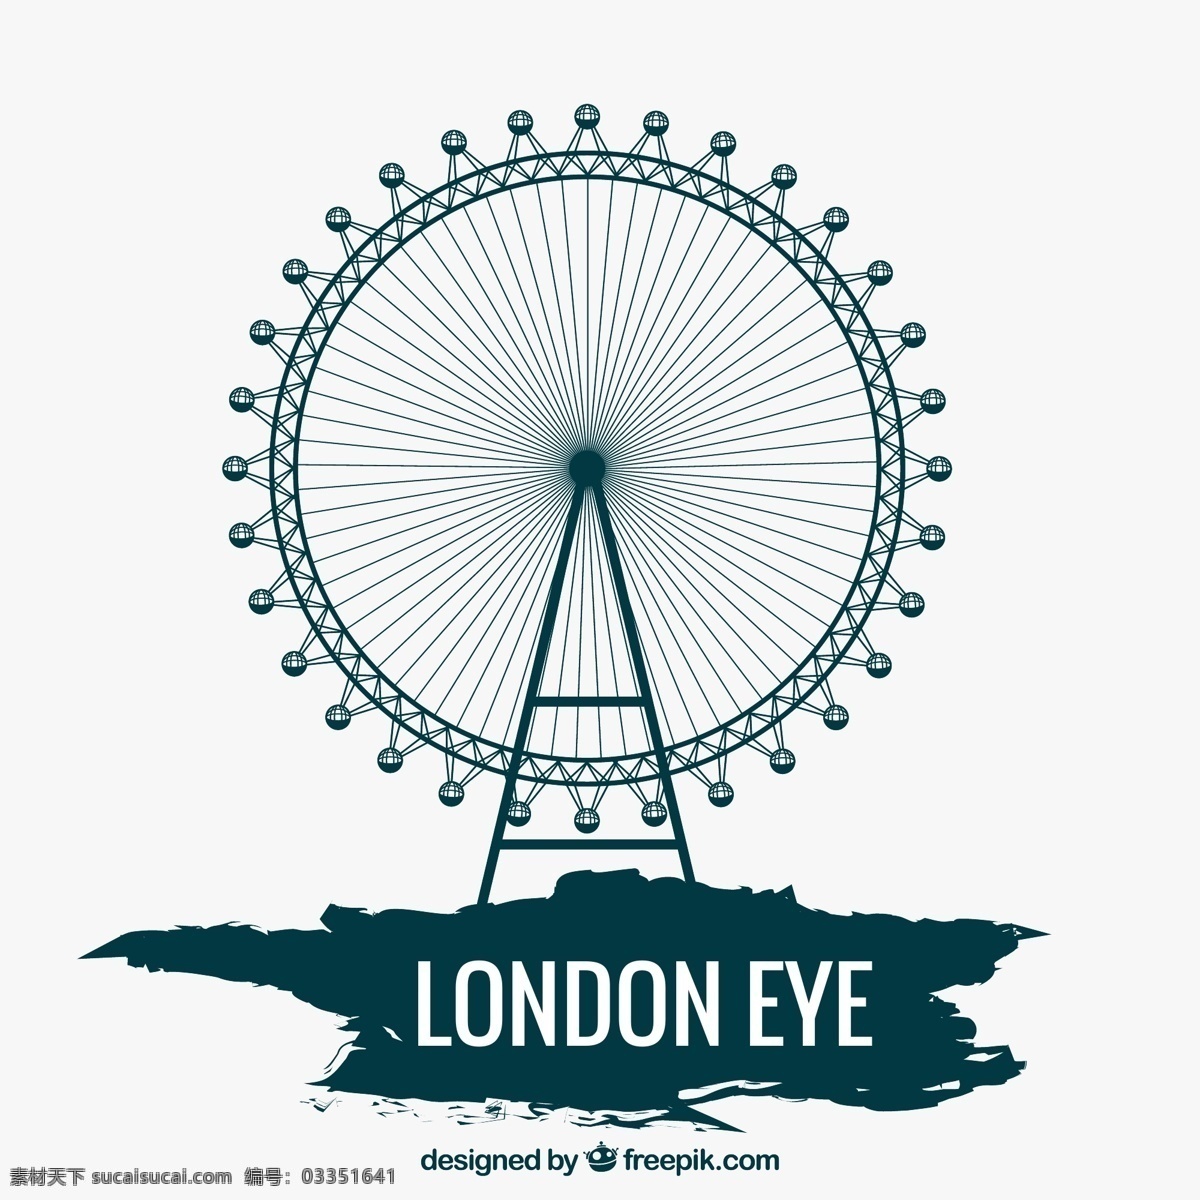 创意 伦敦 地标 眼 矢量 英国 观景摩天轮 伦敦眼 矢量图